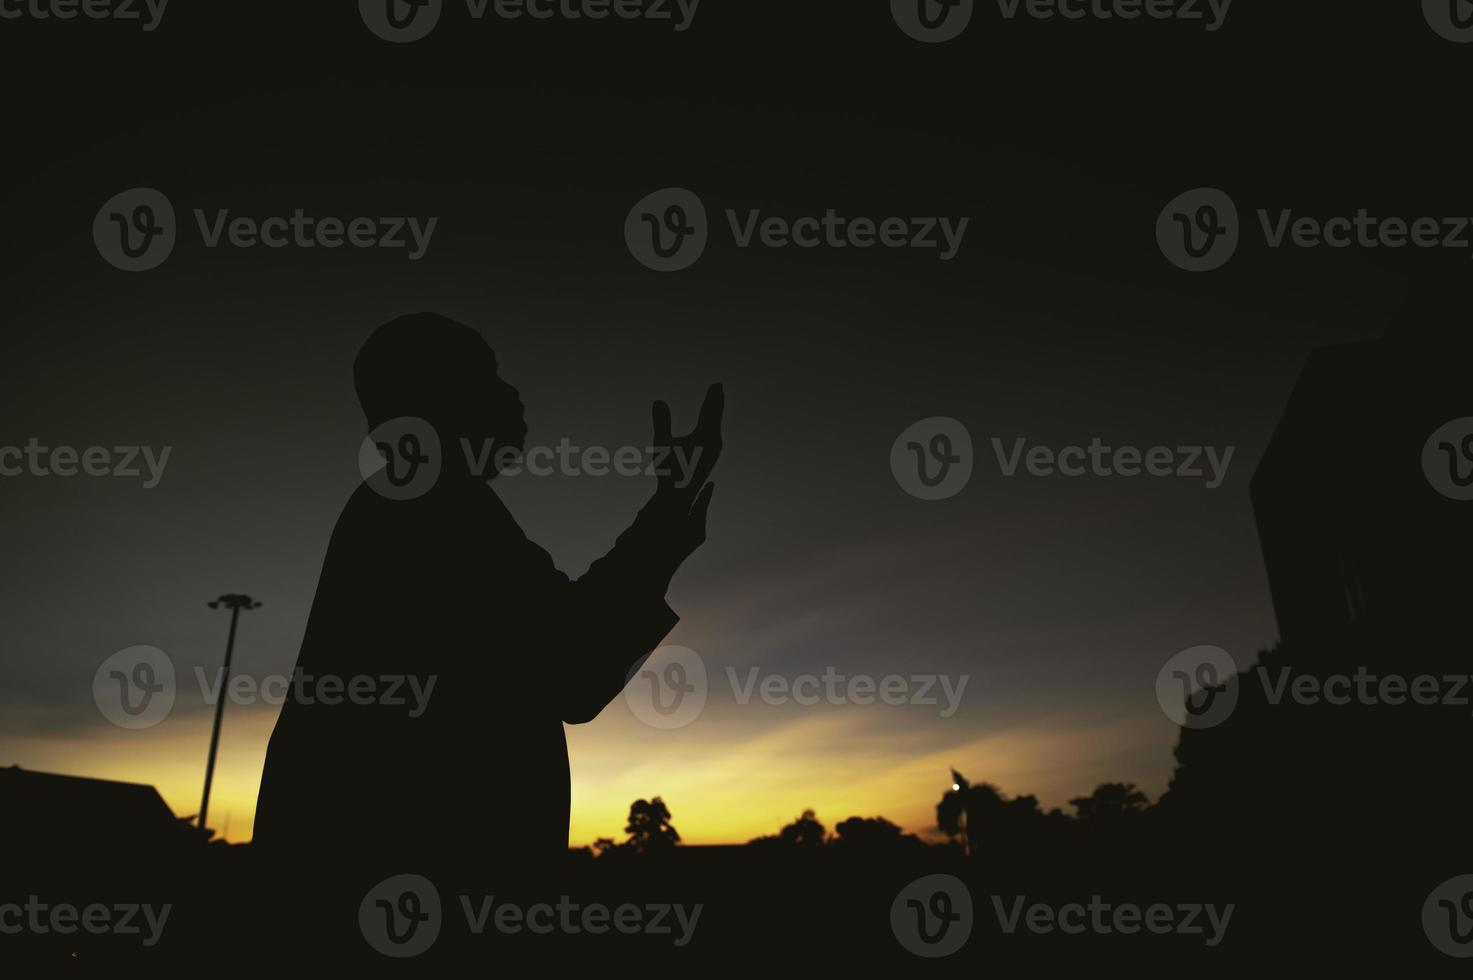 silhuett ung asiatisk muslim man bön- på solnedgång, ramadan festival begrepp foto